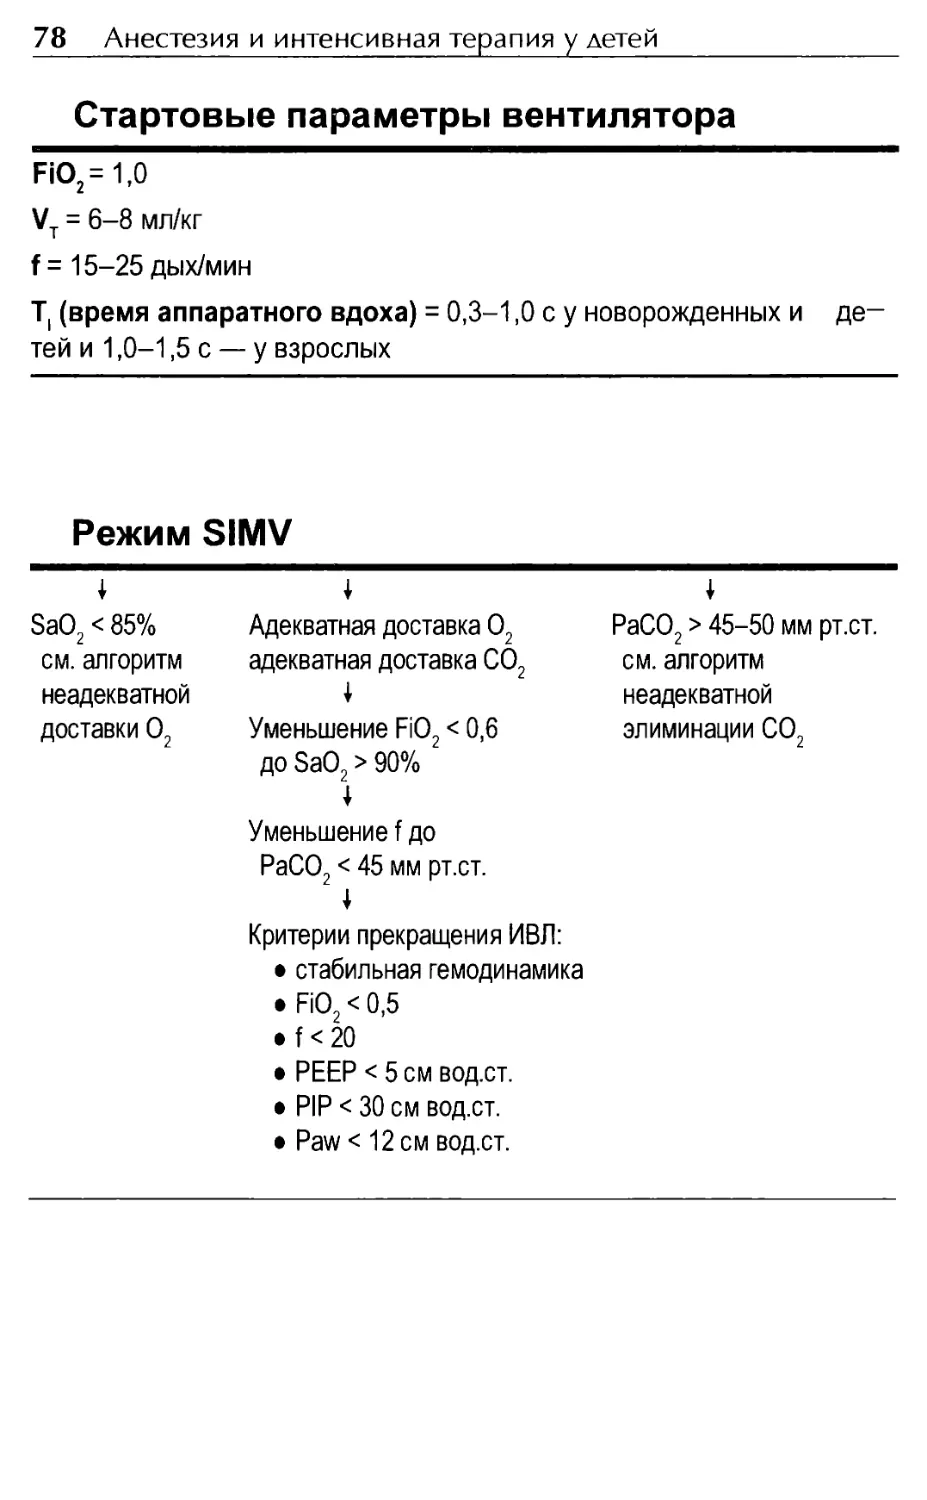 Стартовые параметры вентилятора
Режим SIMV